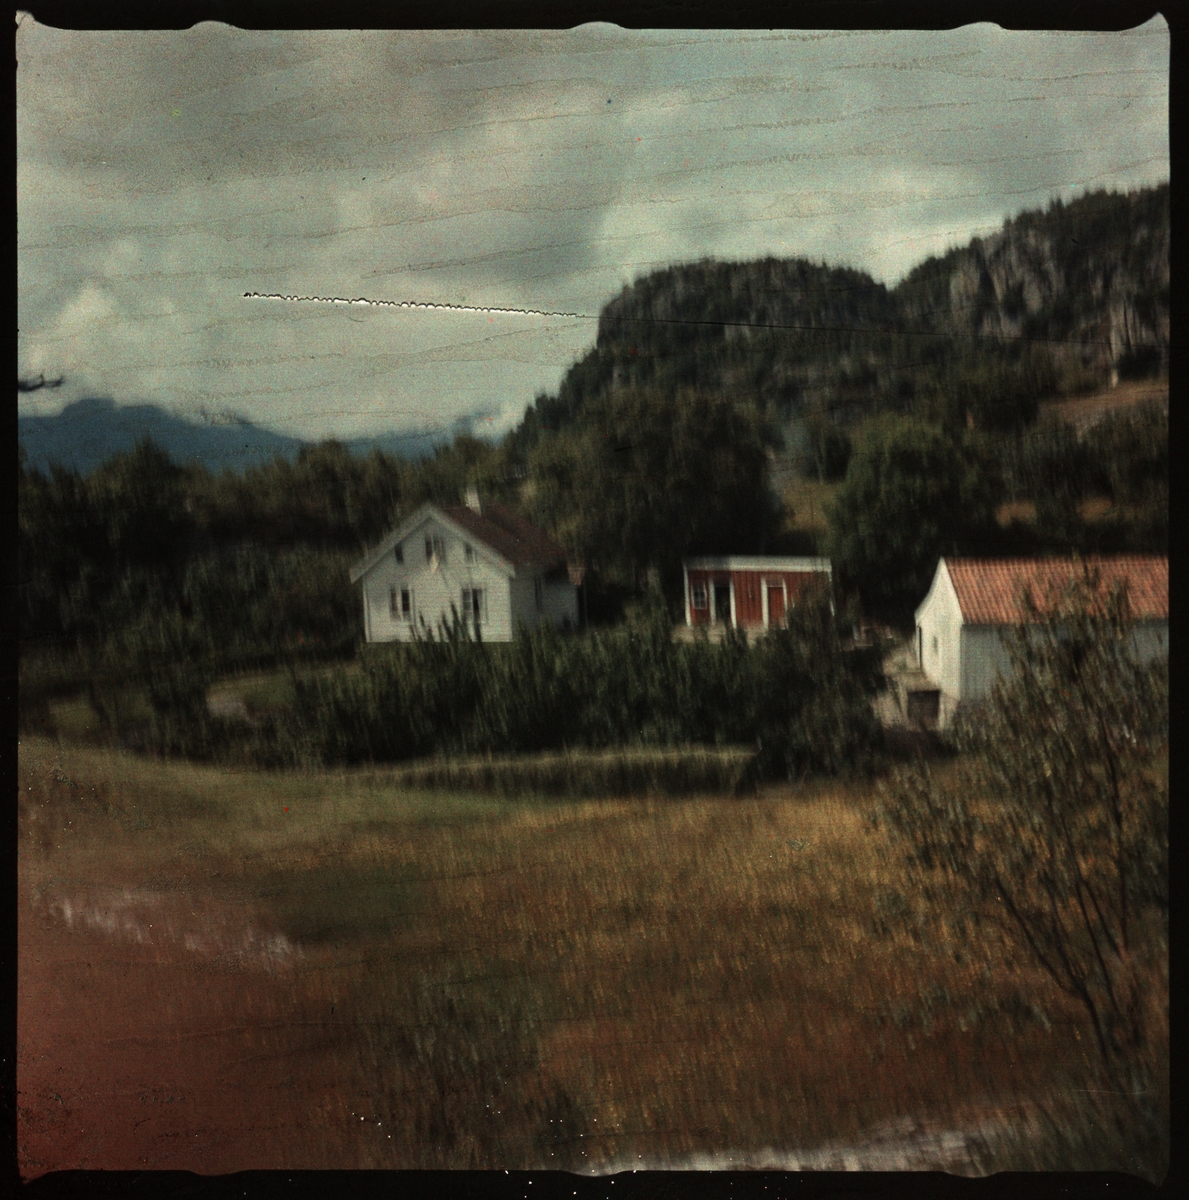 En gård på Bokn eller Ryfylke og et bilde av Lindtner som går langs en strand. Det ene bildet er et tidlig fargepositiv (transparent).